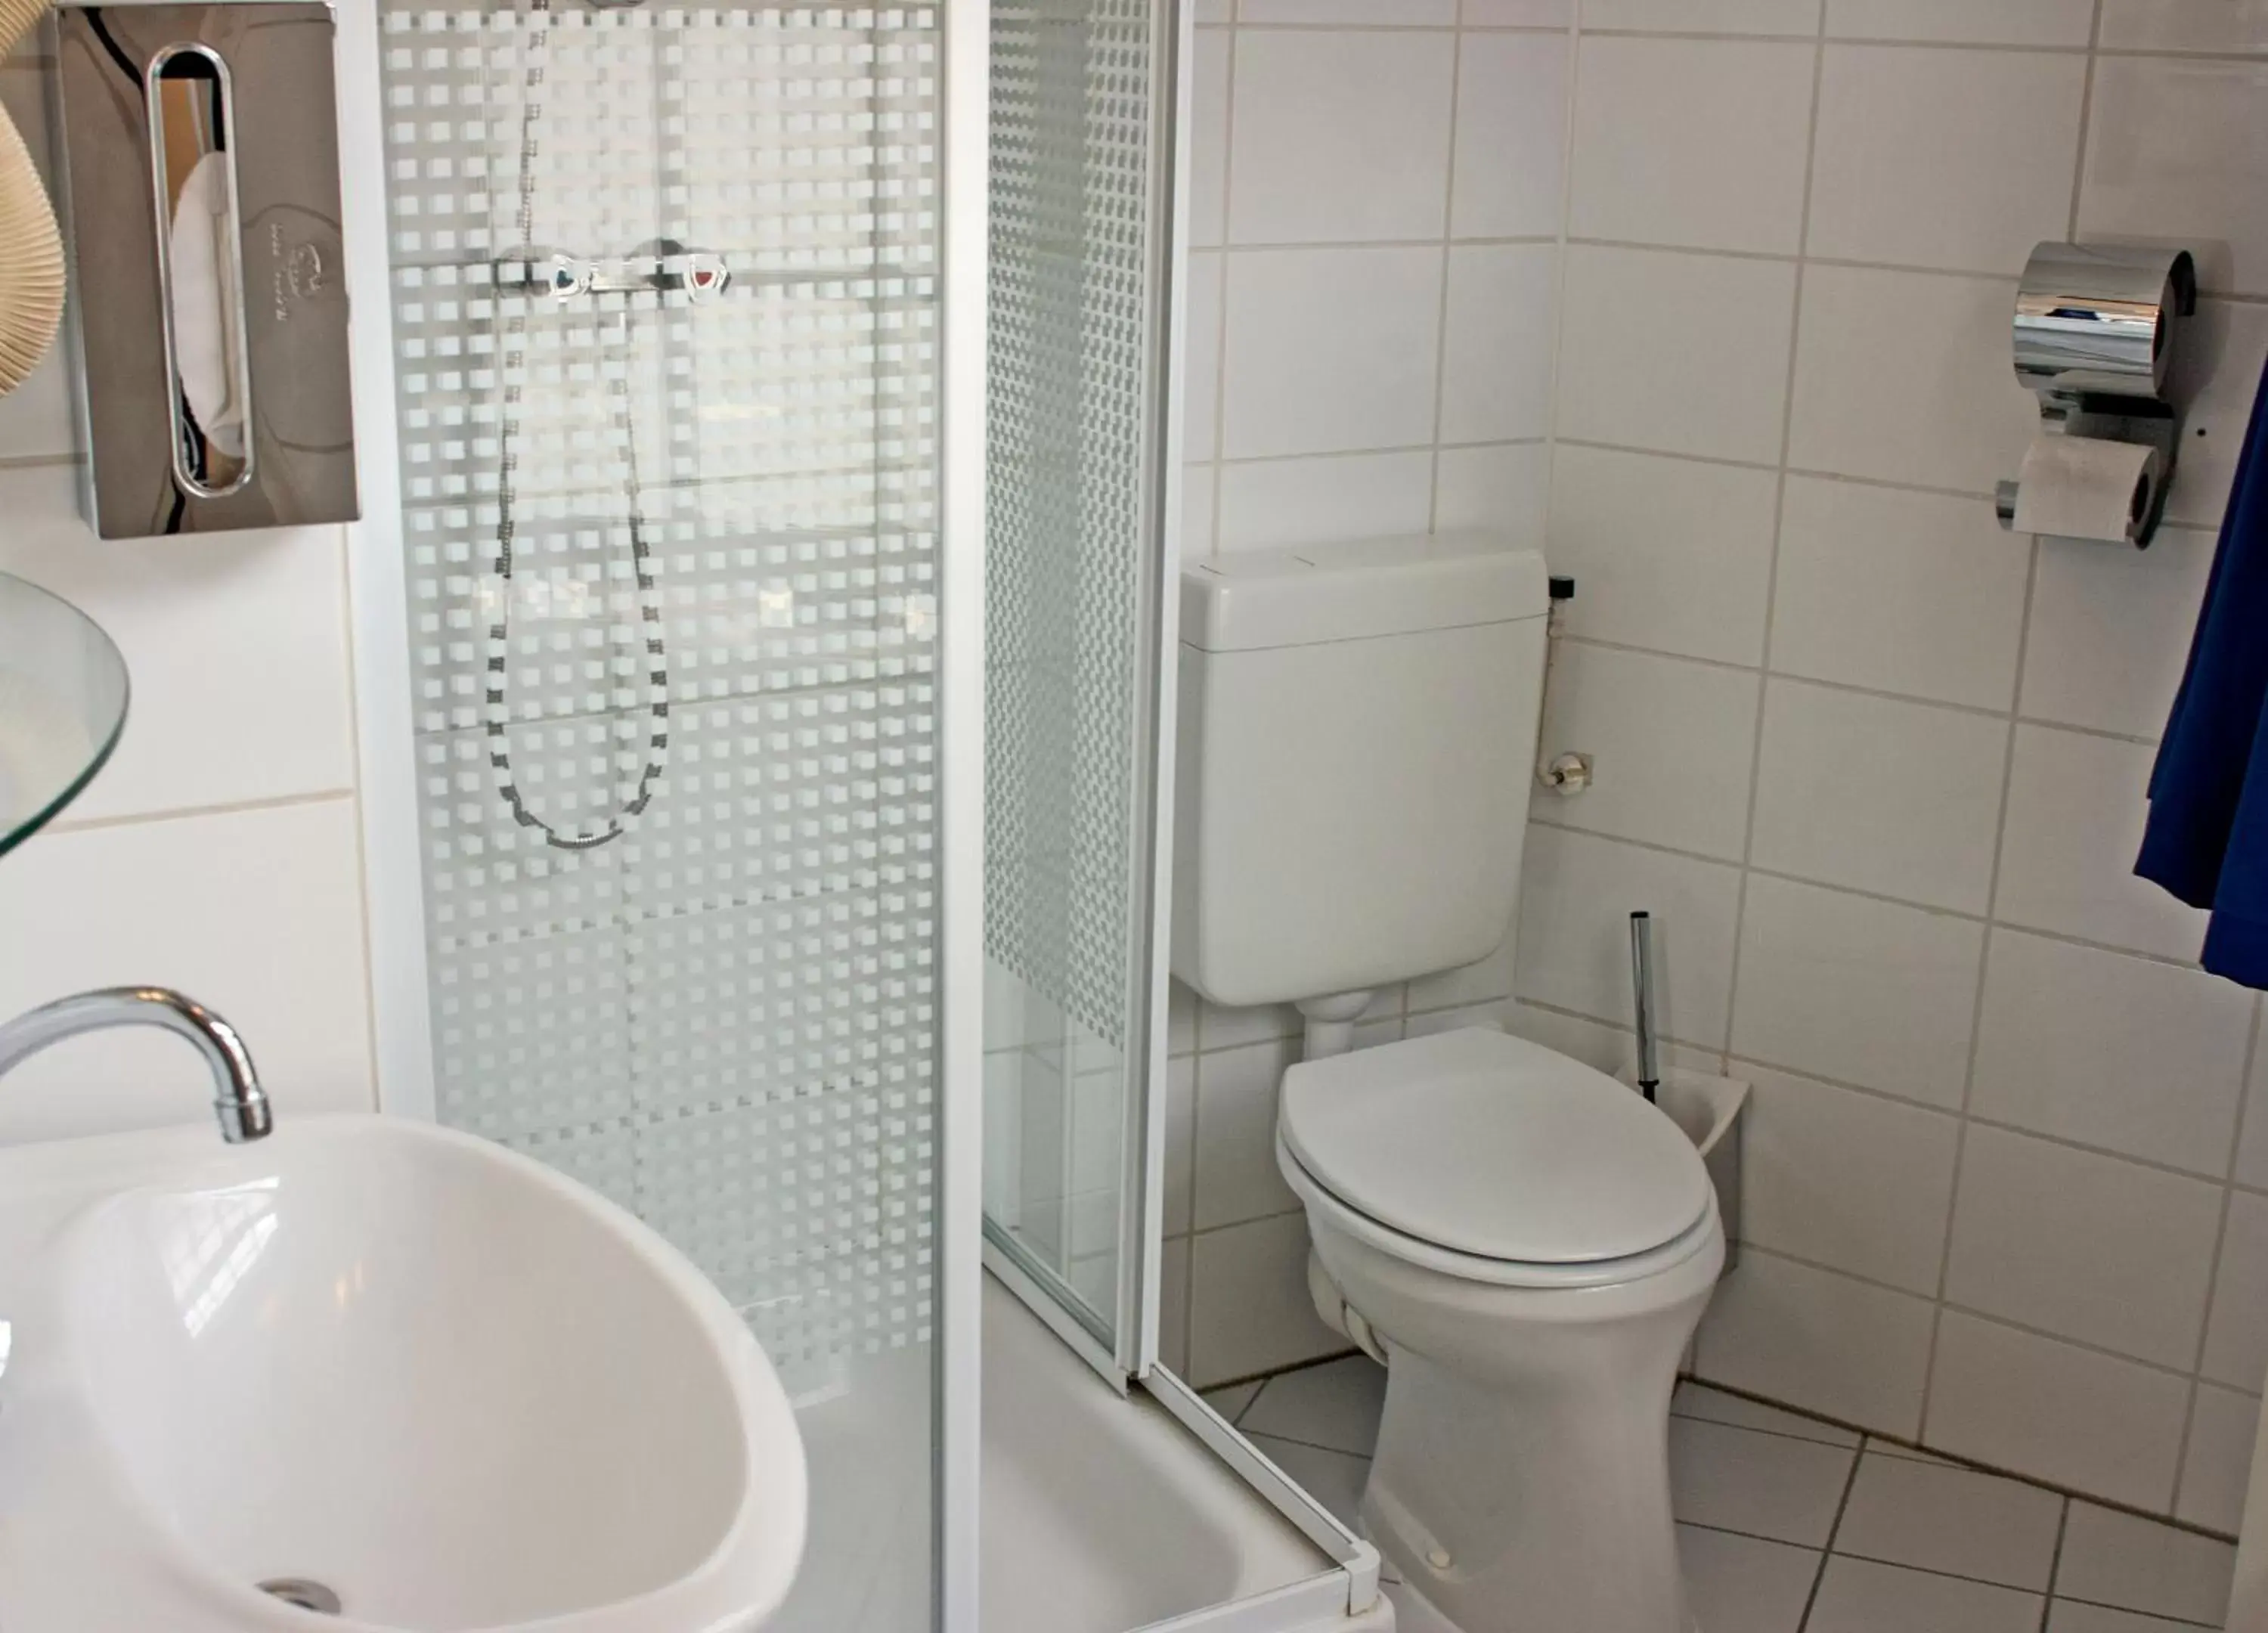 Bathroom in Koopermoolen